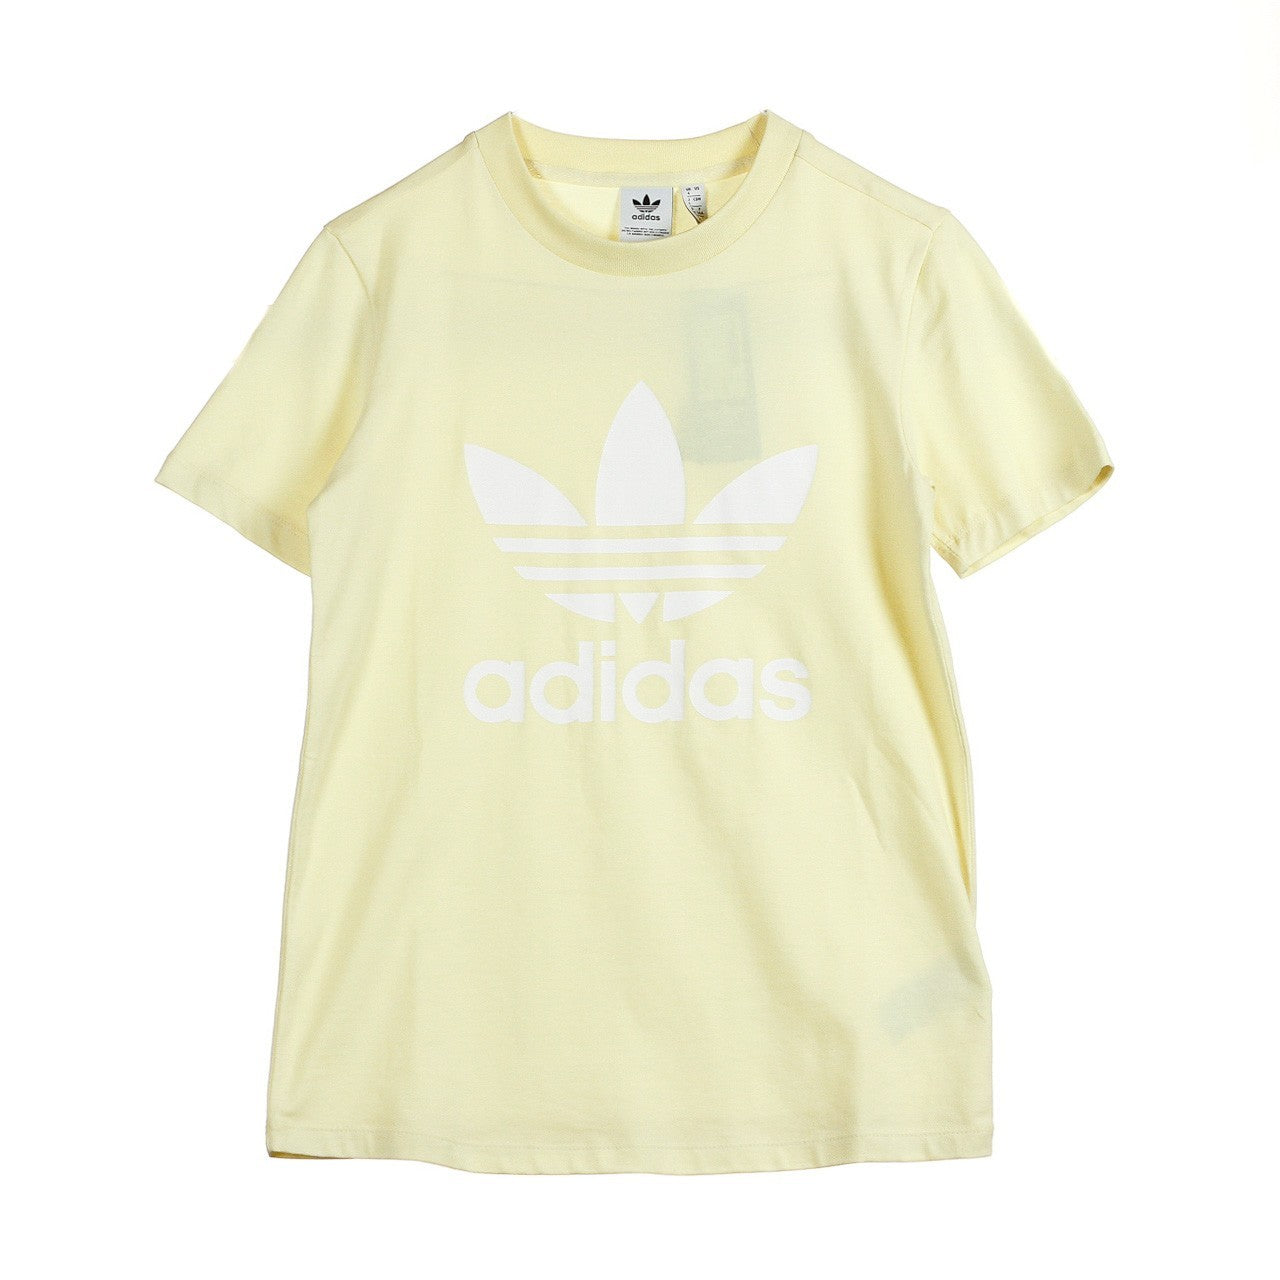 Adidas, Maglietta Donna Trefoil Tee, Mist Sun/white